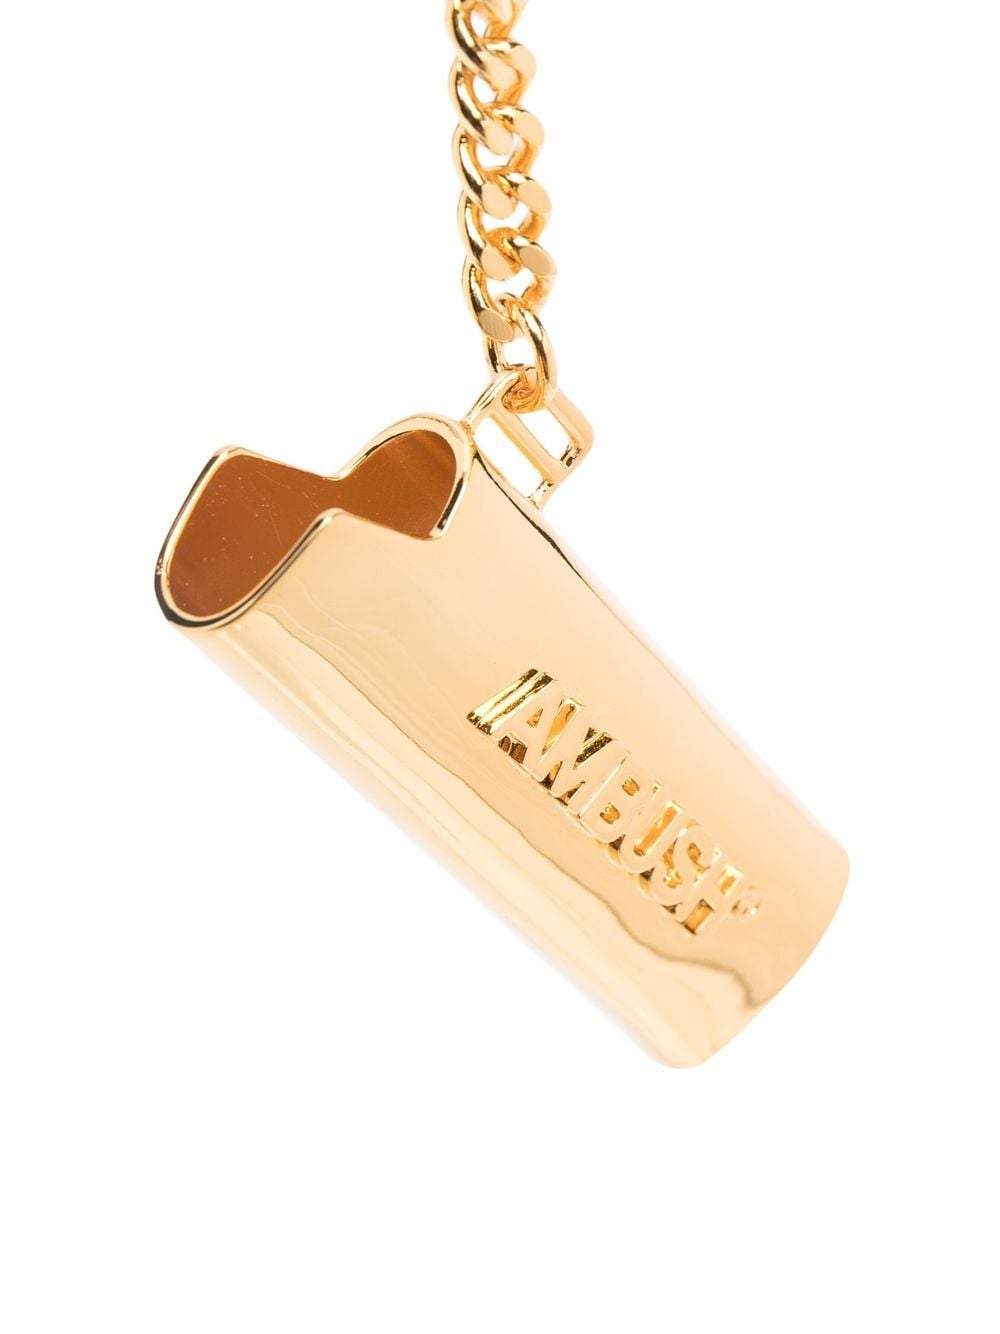 AMBUSH Lighter Case Keychain Gold - MAISONDEFASHION.COM